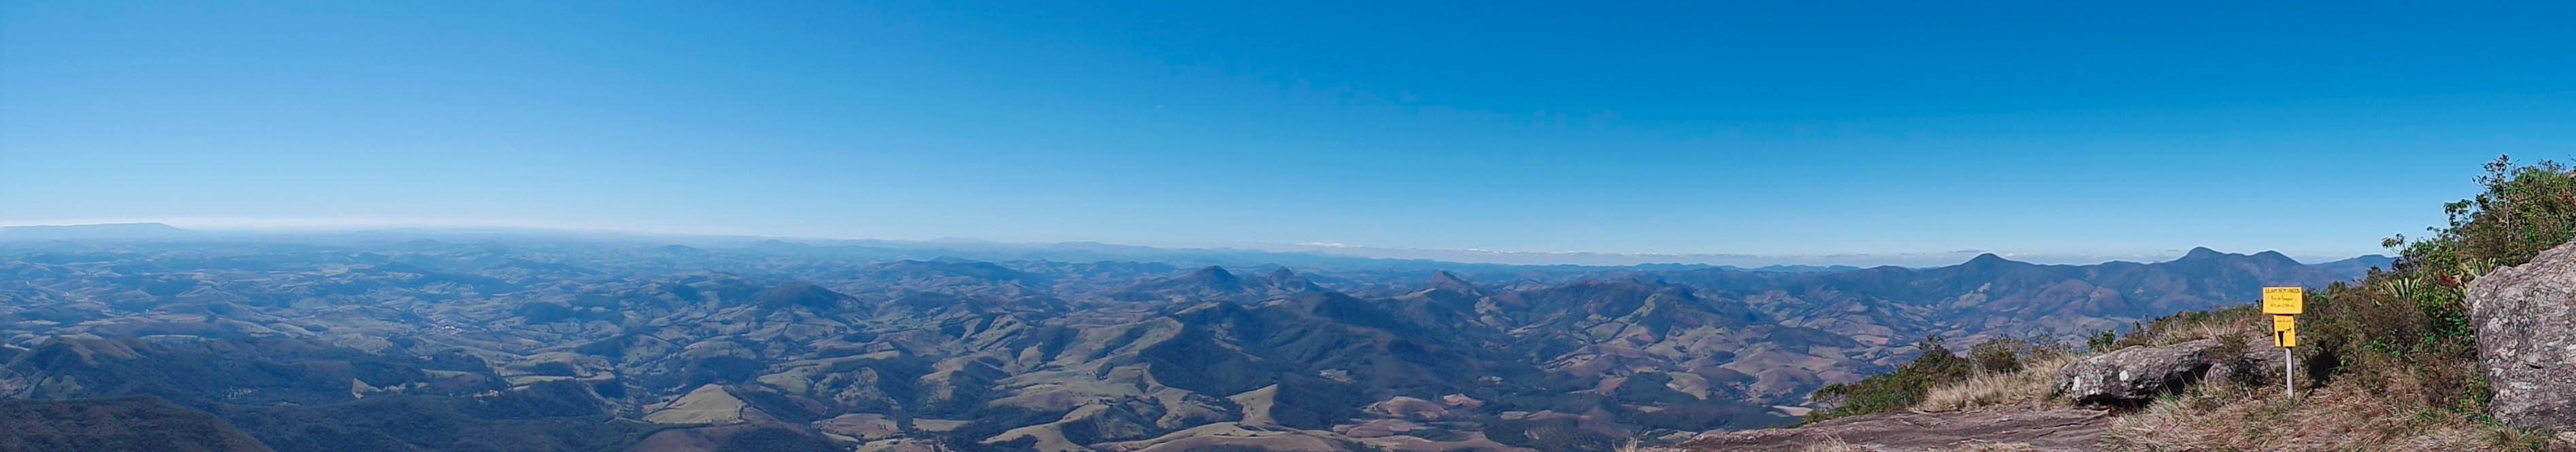 Vista panorâmica do cume do Pico do Papagaio